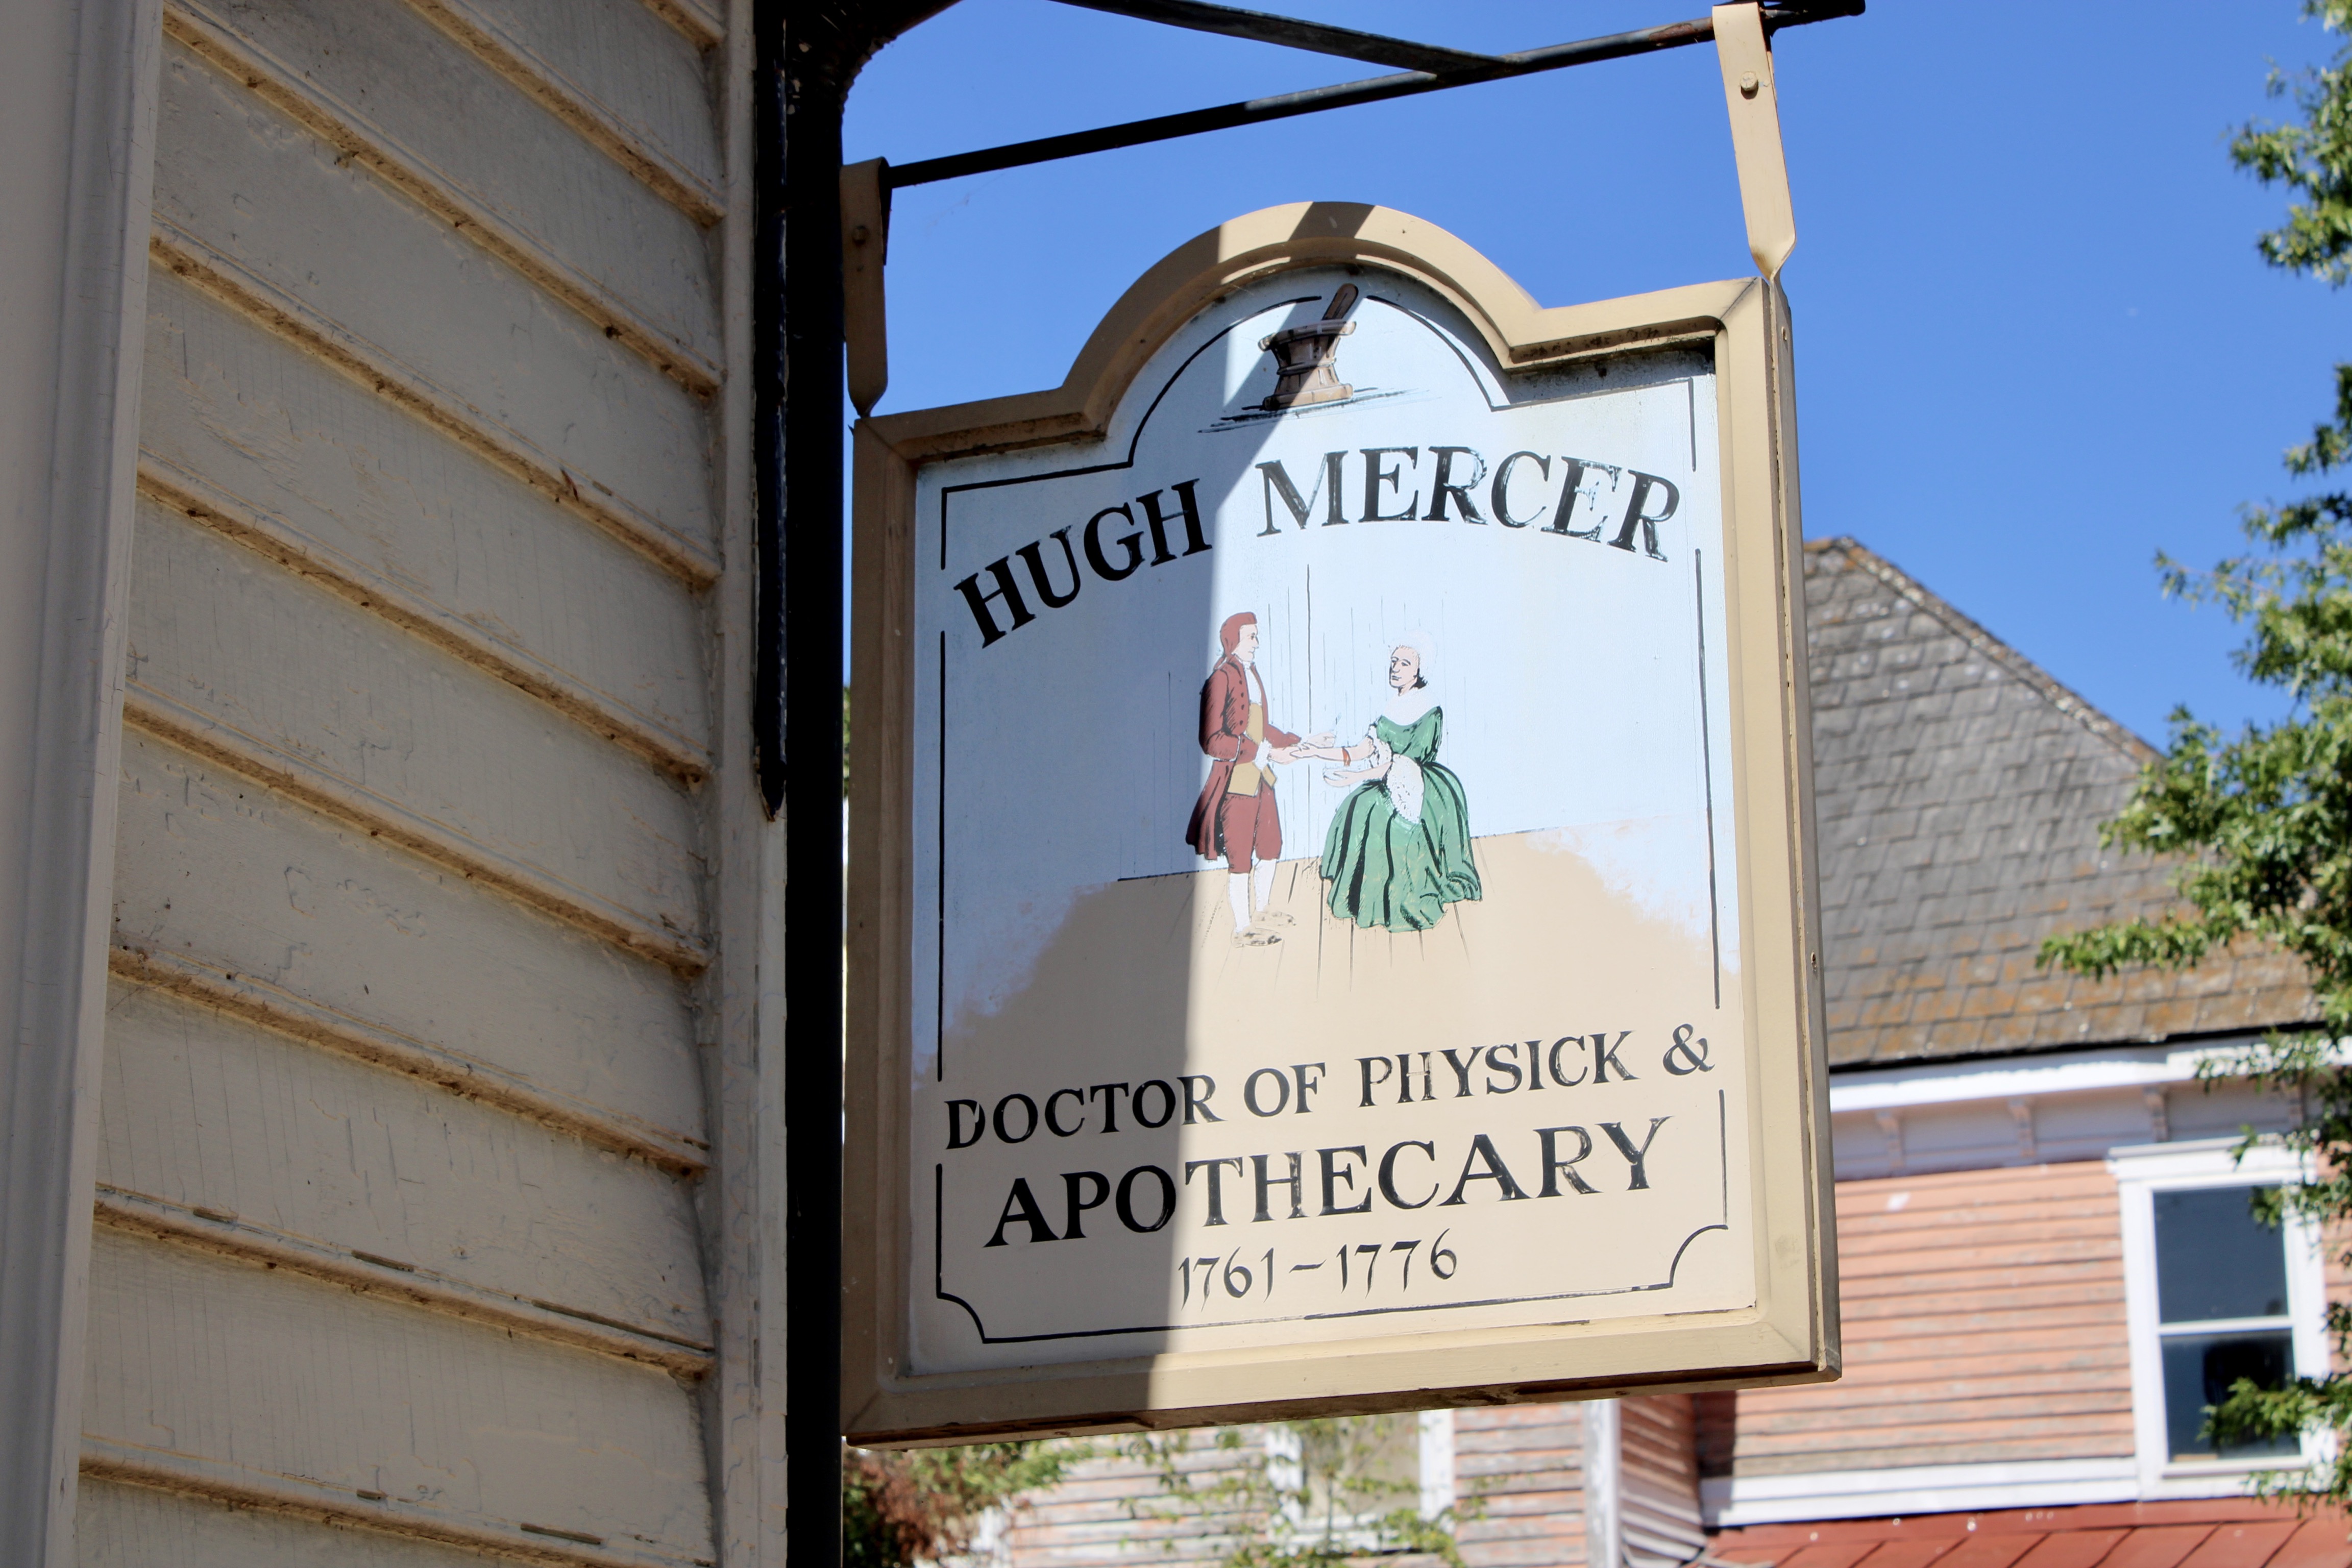 Hugh Mercer Apothecary Shop